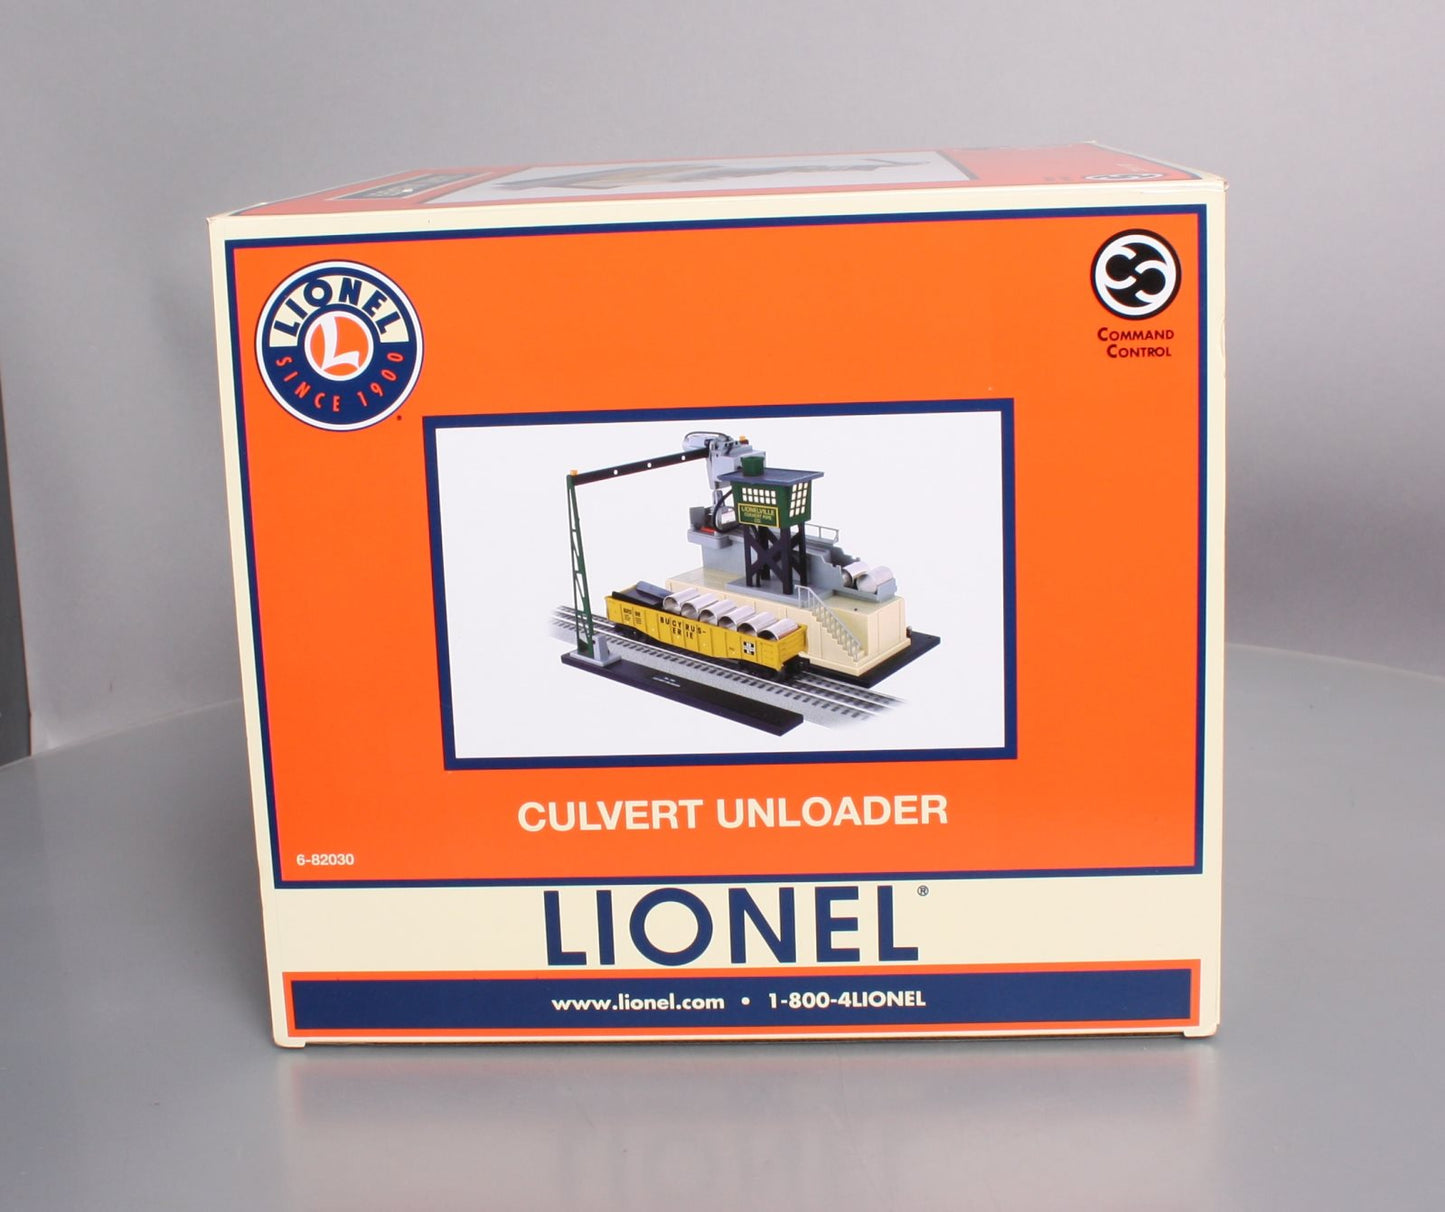 Lionel 6-82030 O Gauge Command Controlled Culvert Unloader